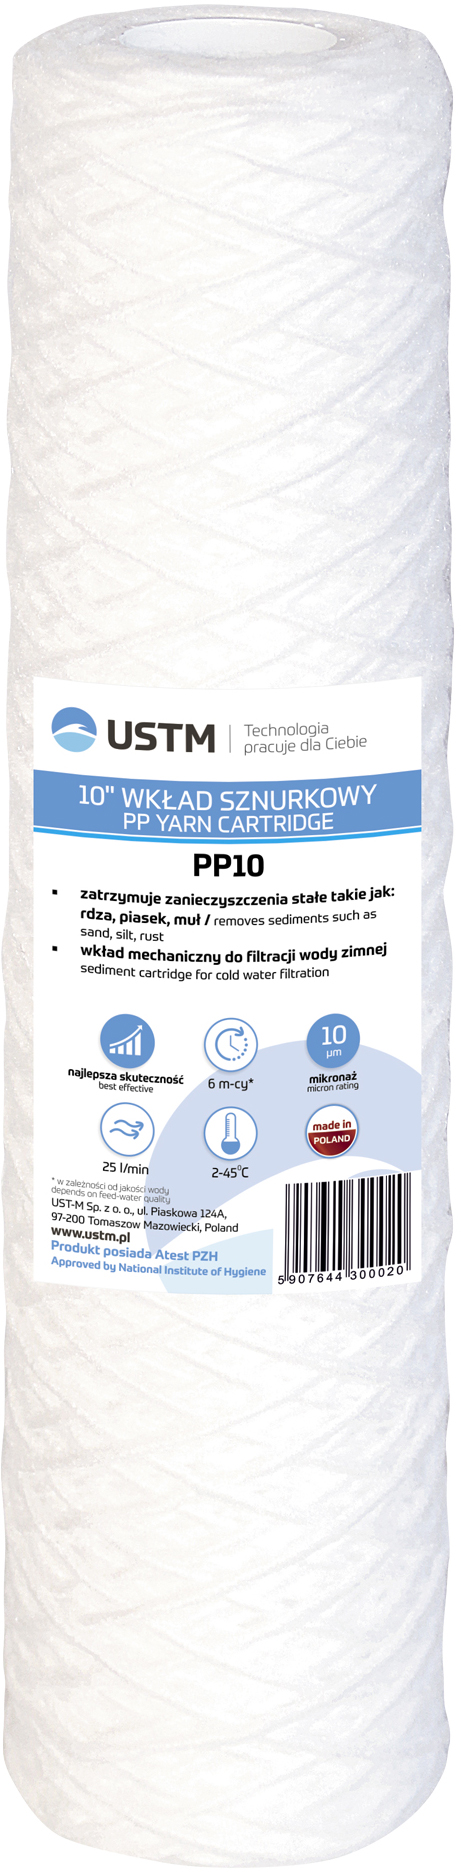 Картридж для фильтра USTM PP10